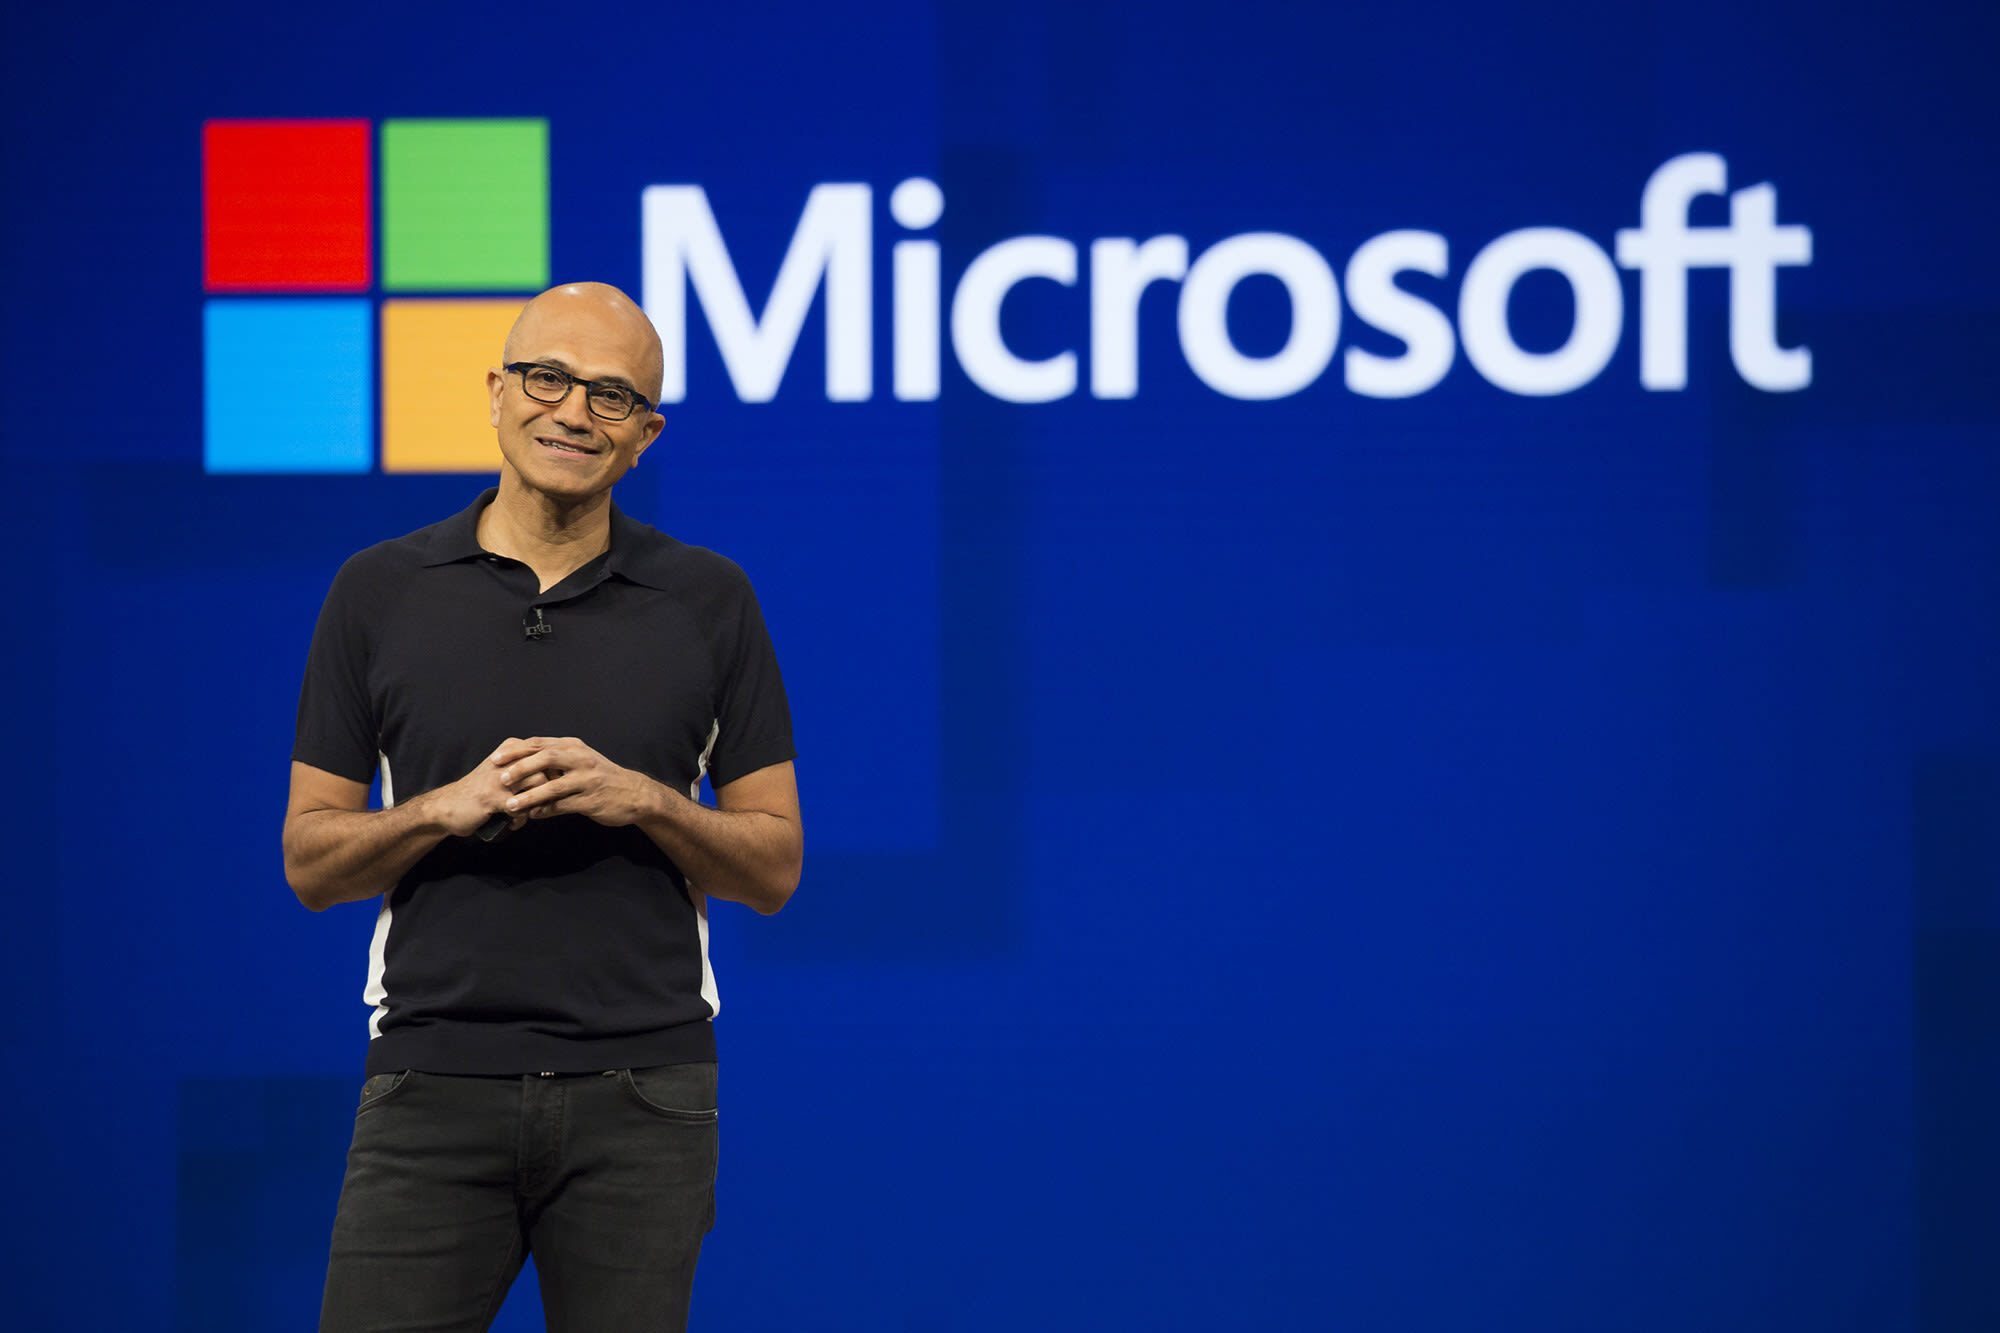 Глава Microsoft получил увеличенную зарплату накануне массовых увольнений в компании